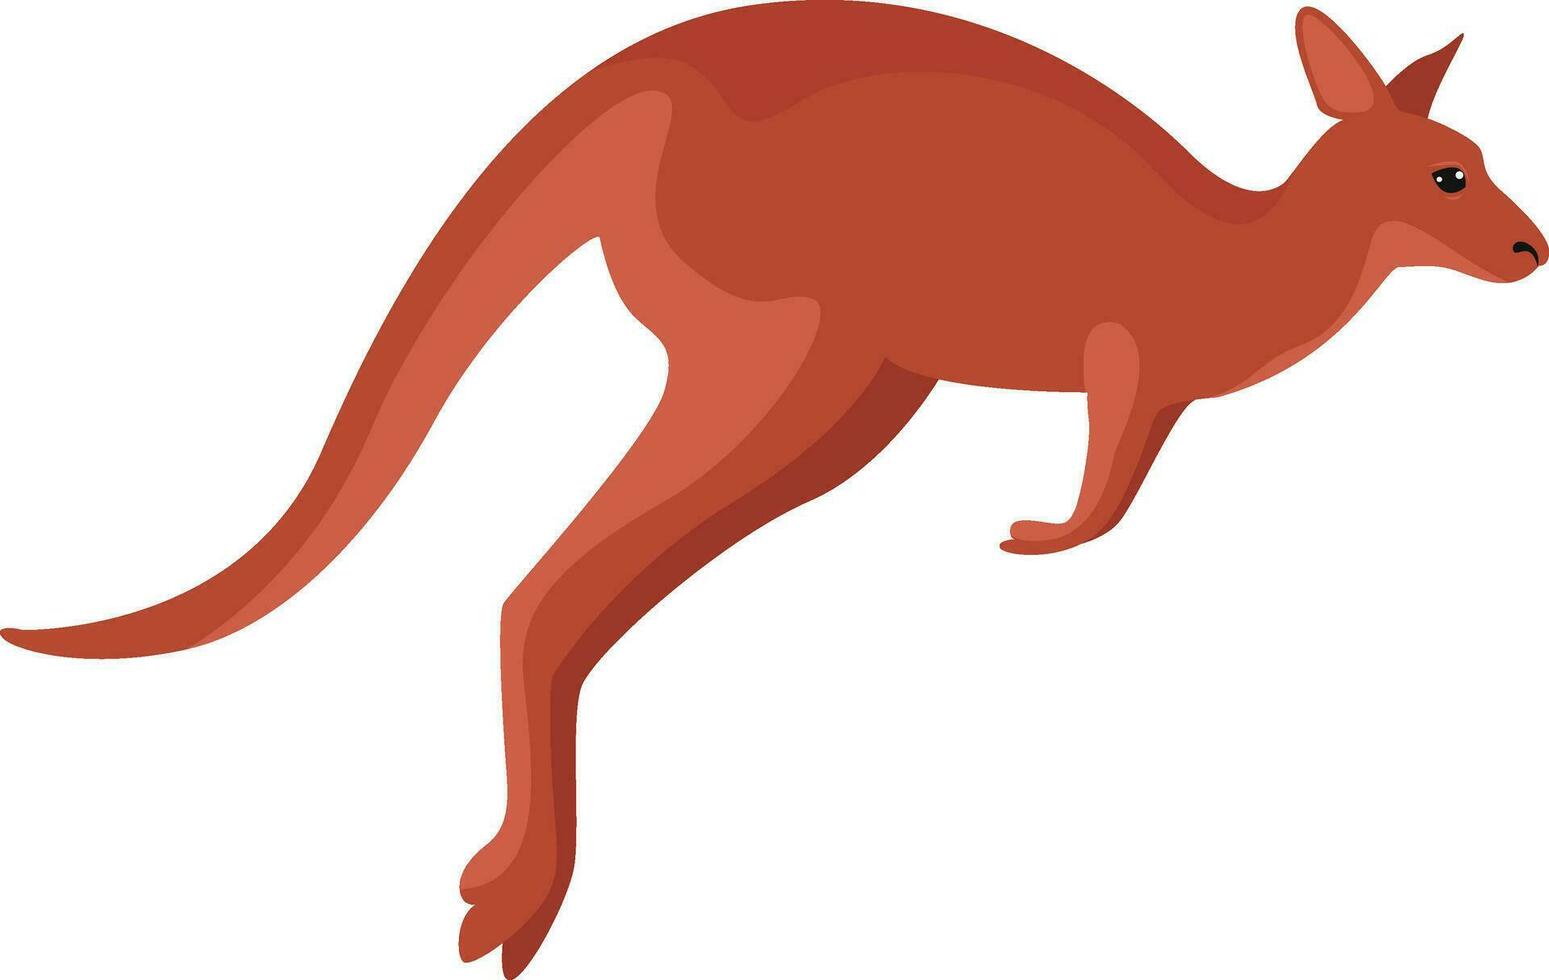 Red kangaroo, illustration, vector on white background